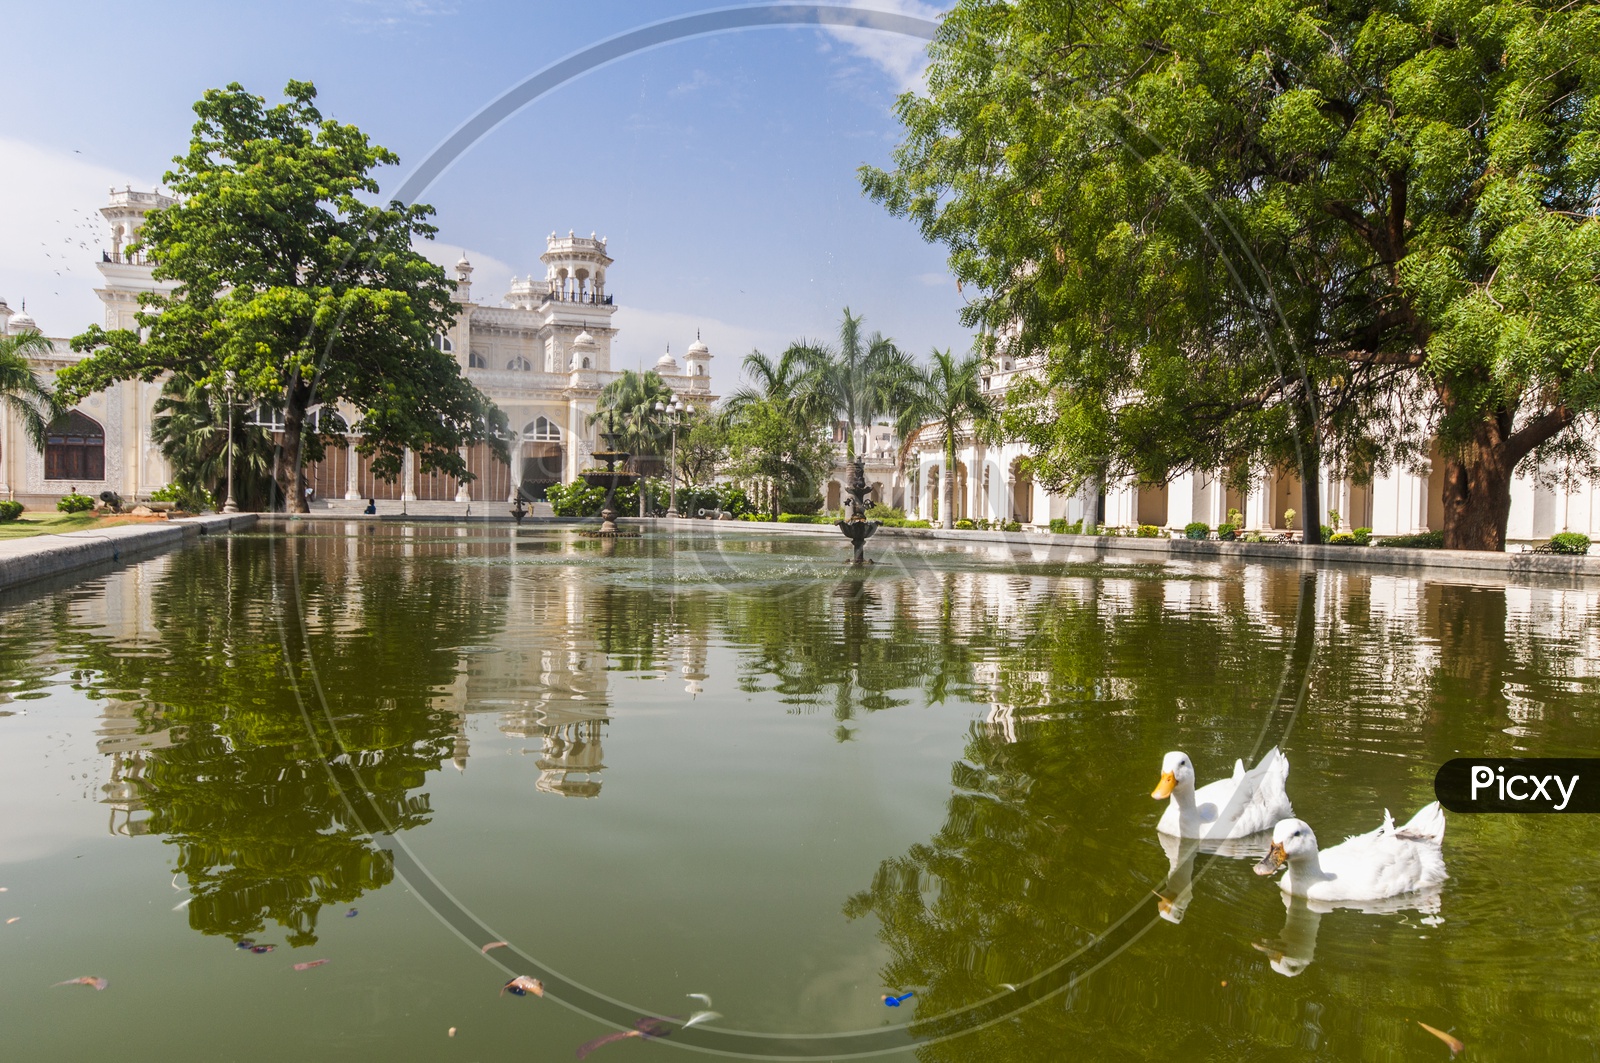 Ducks at Chowmohalla Palace, Hyderabad